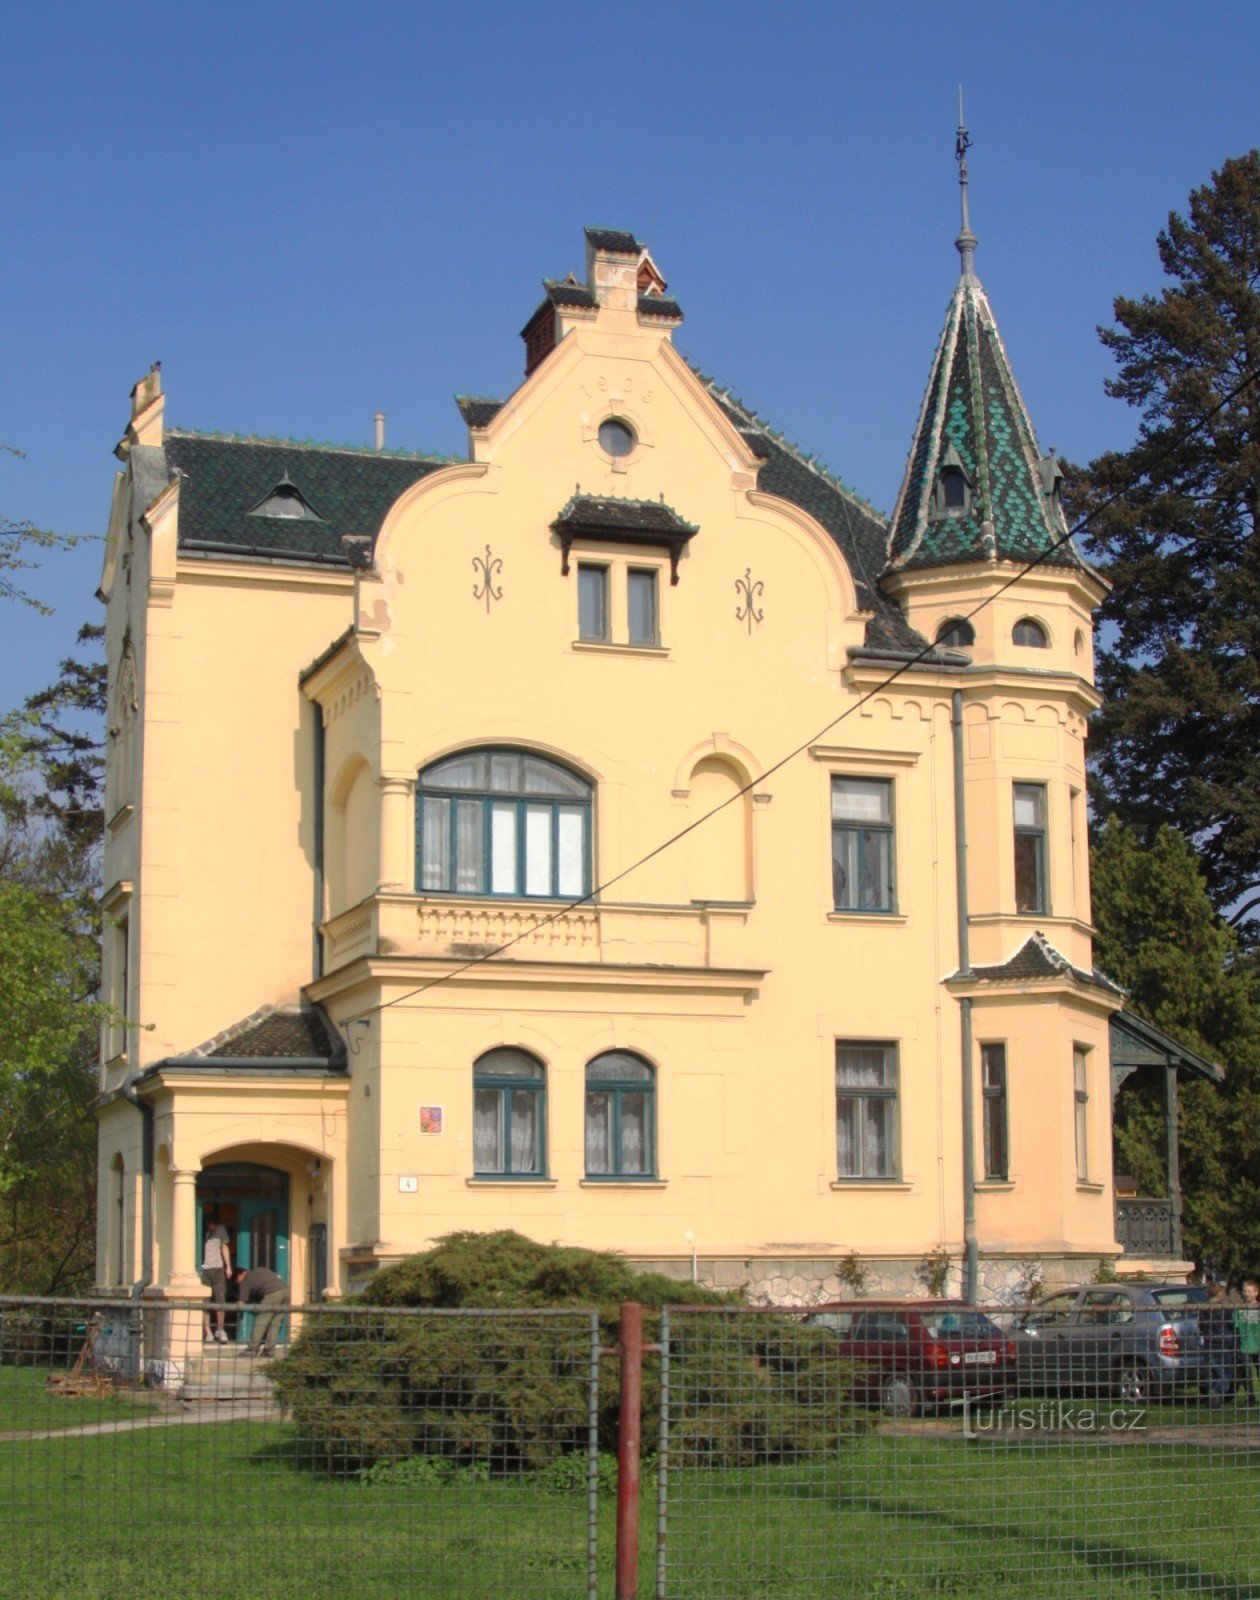 Břeclav - Hvězdova vila